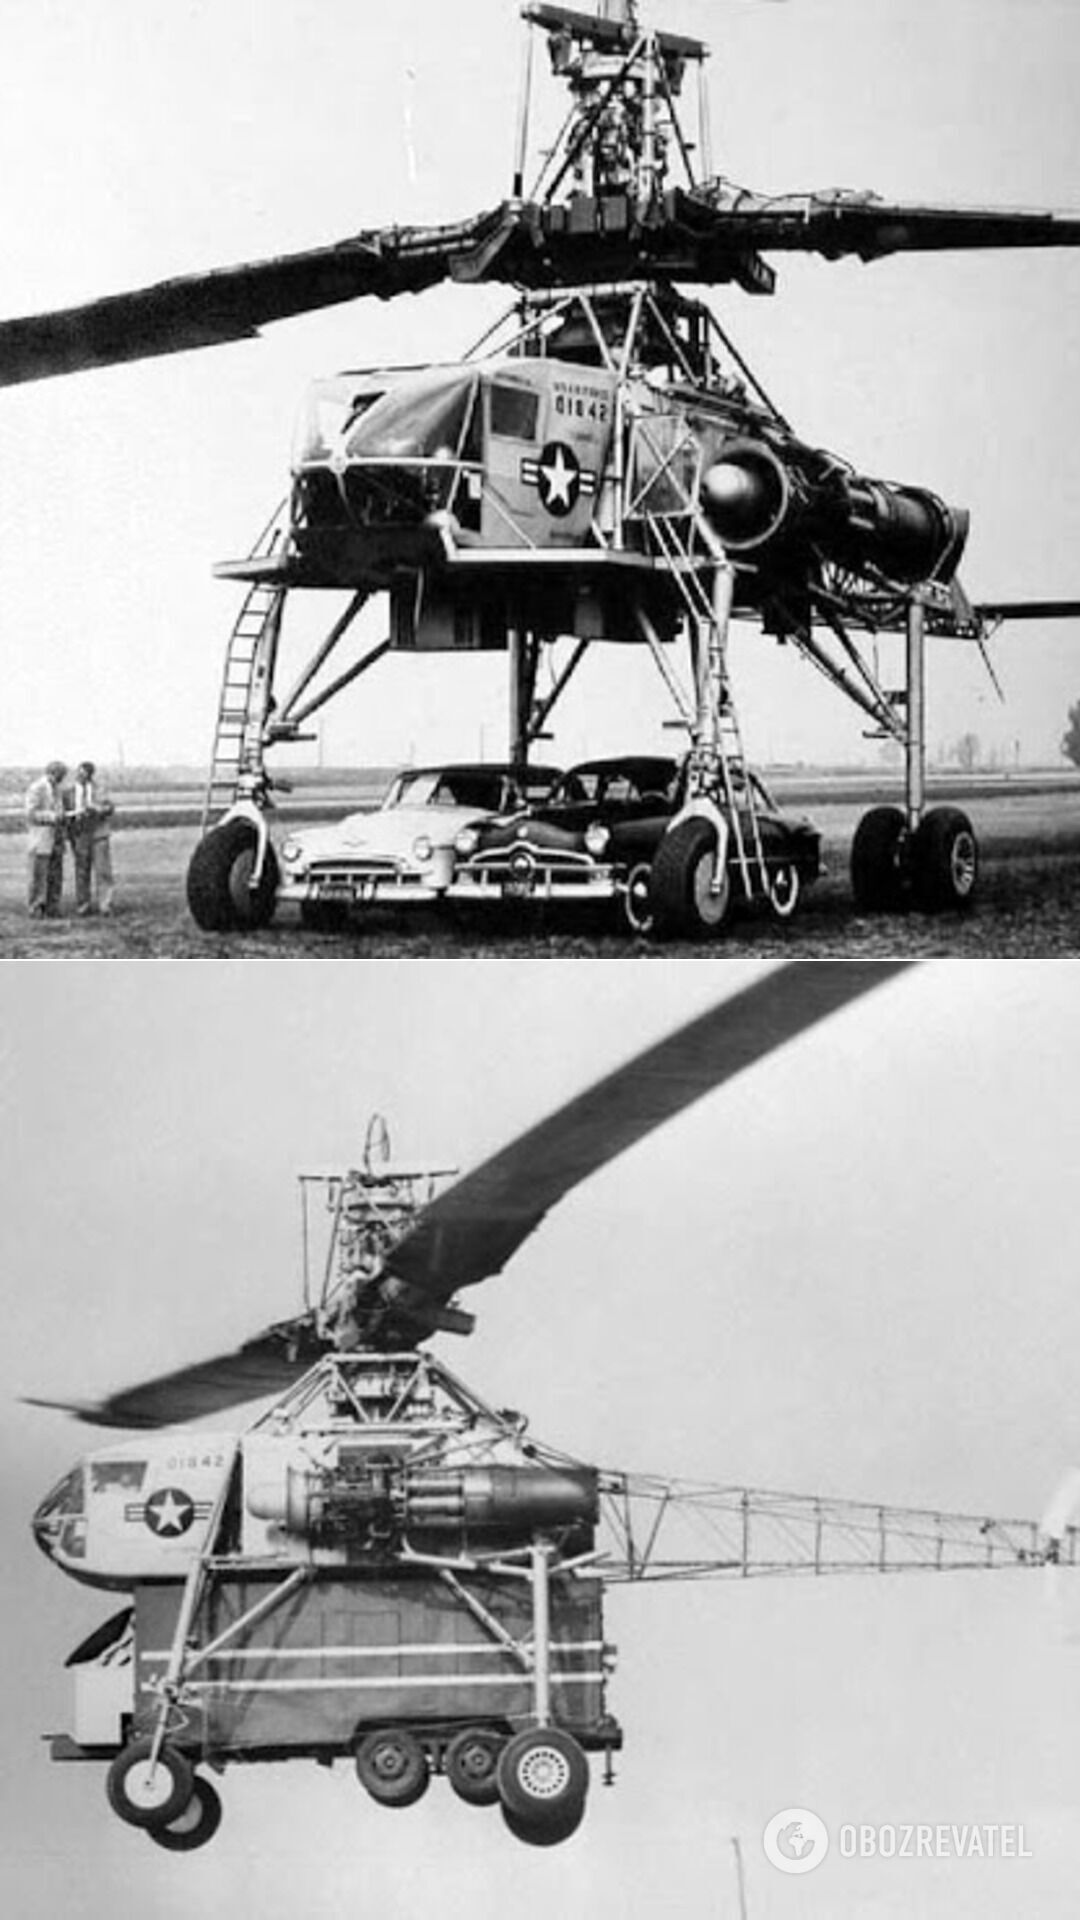 Летающий кран XH-17 – построенный американской военно-промышленной авиастроительной компанией Hughes Aircraft вертолет, имевший титанический ротор диаметром 40 метров (12-этажный дом) и умевший поднимать почти 7 тонн